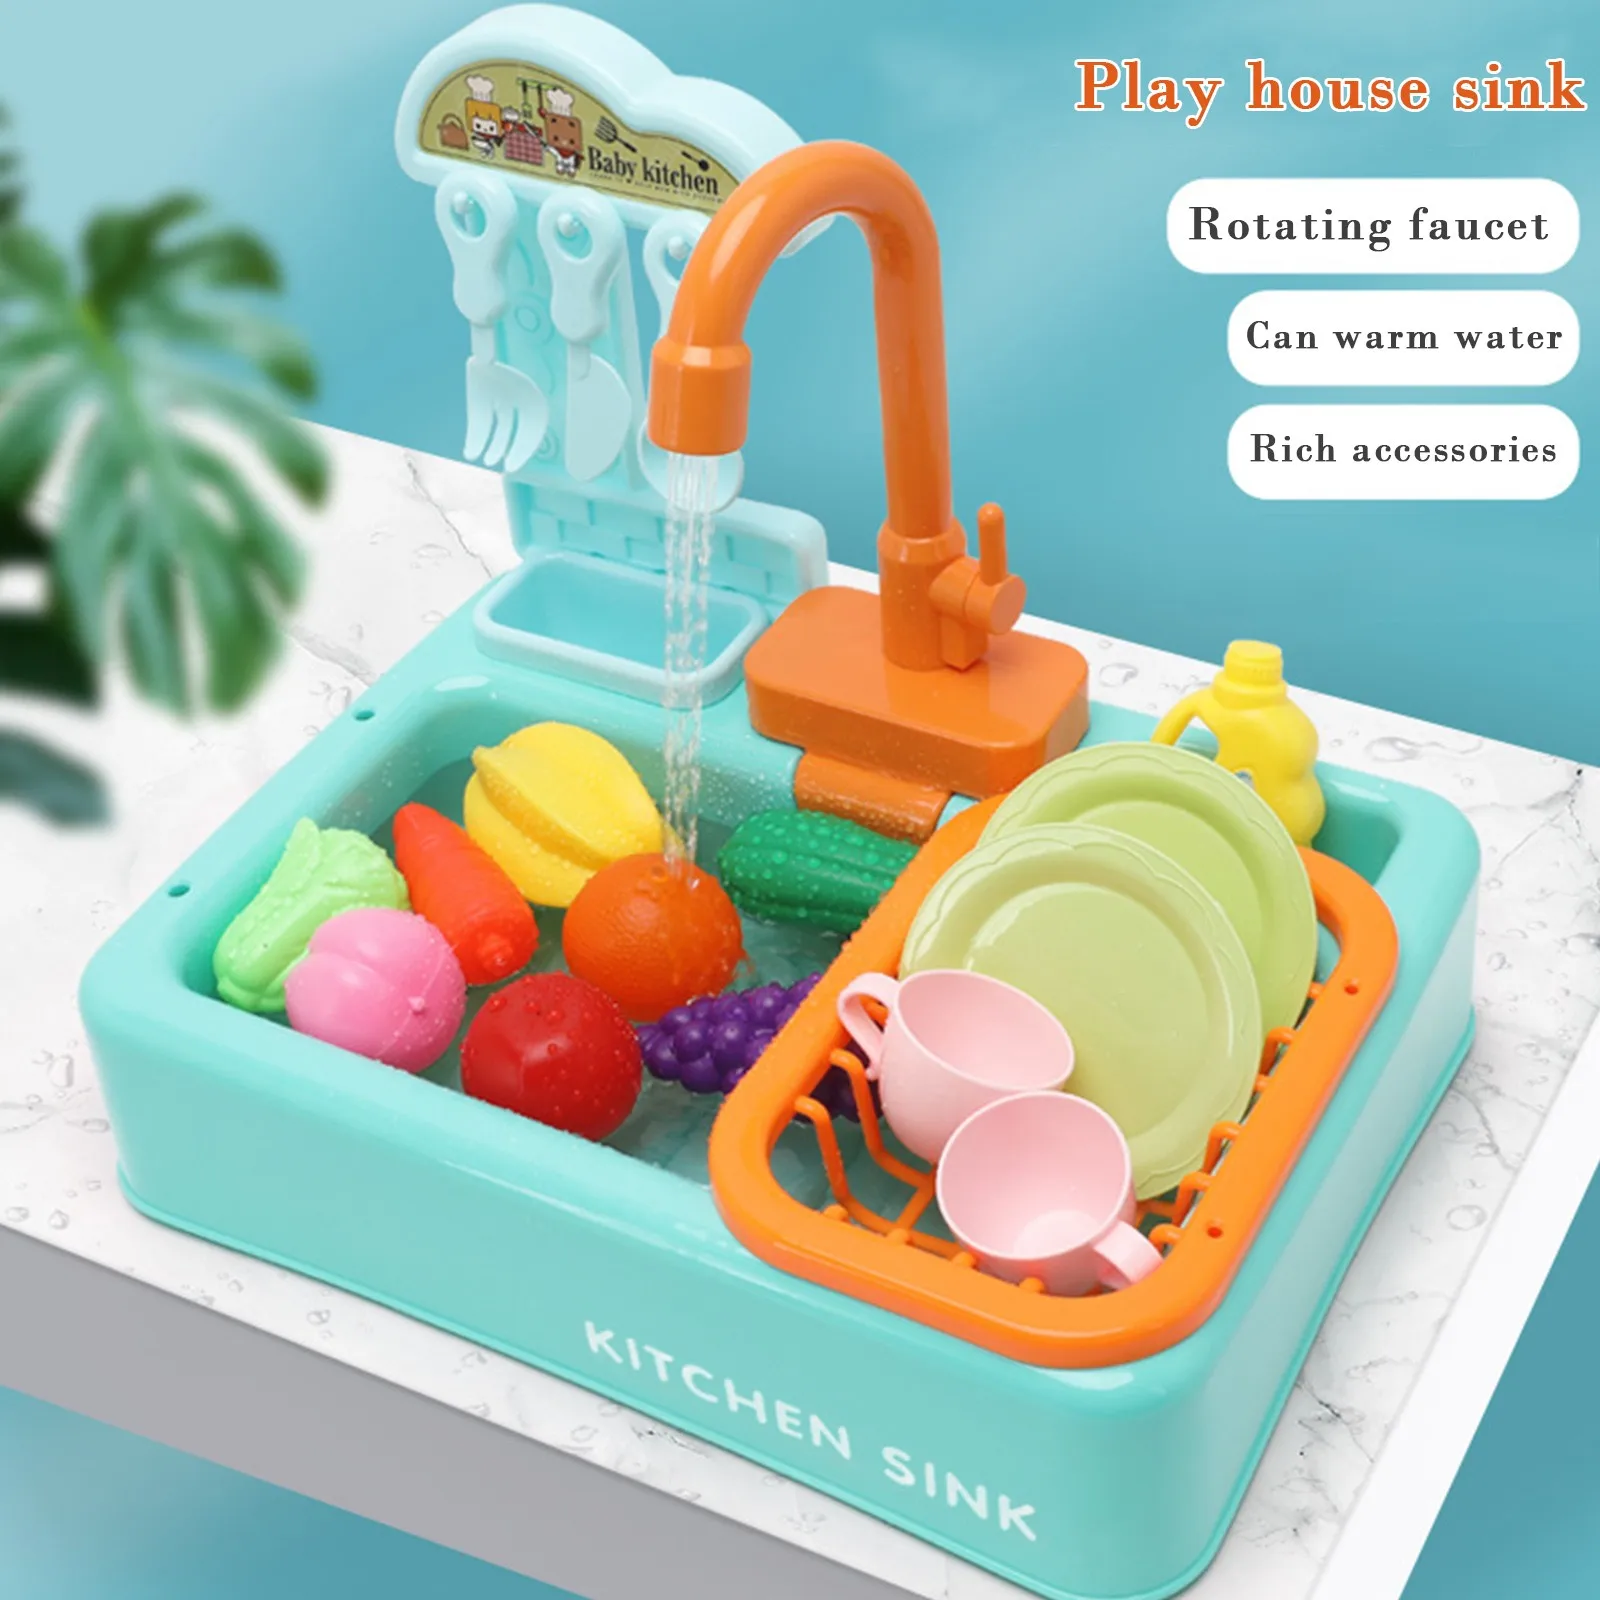 

Lavello elettrico analogico per lavastoviglie gioco di ruolo per bambini Set da cucina giocattoli simulazione giocattoli da cuci